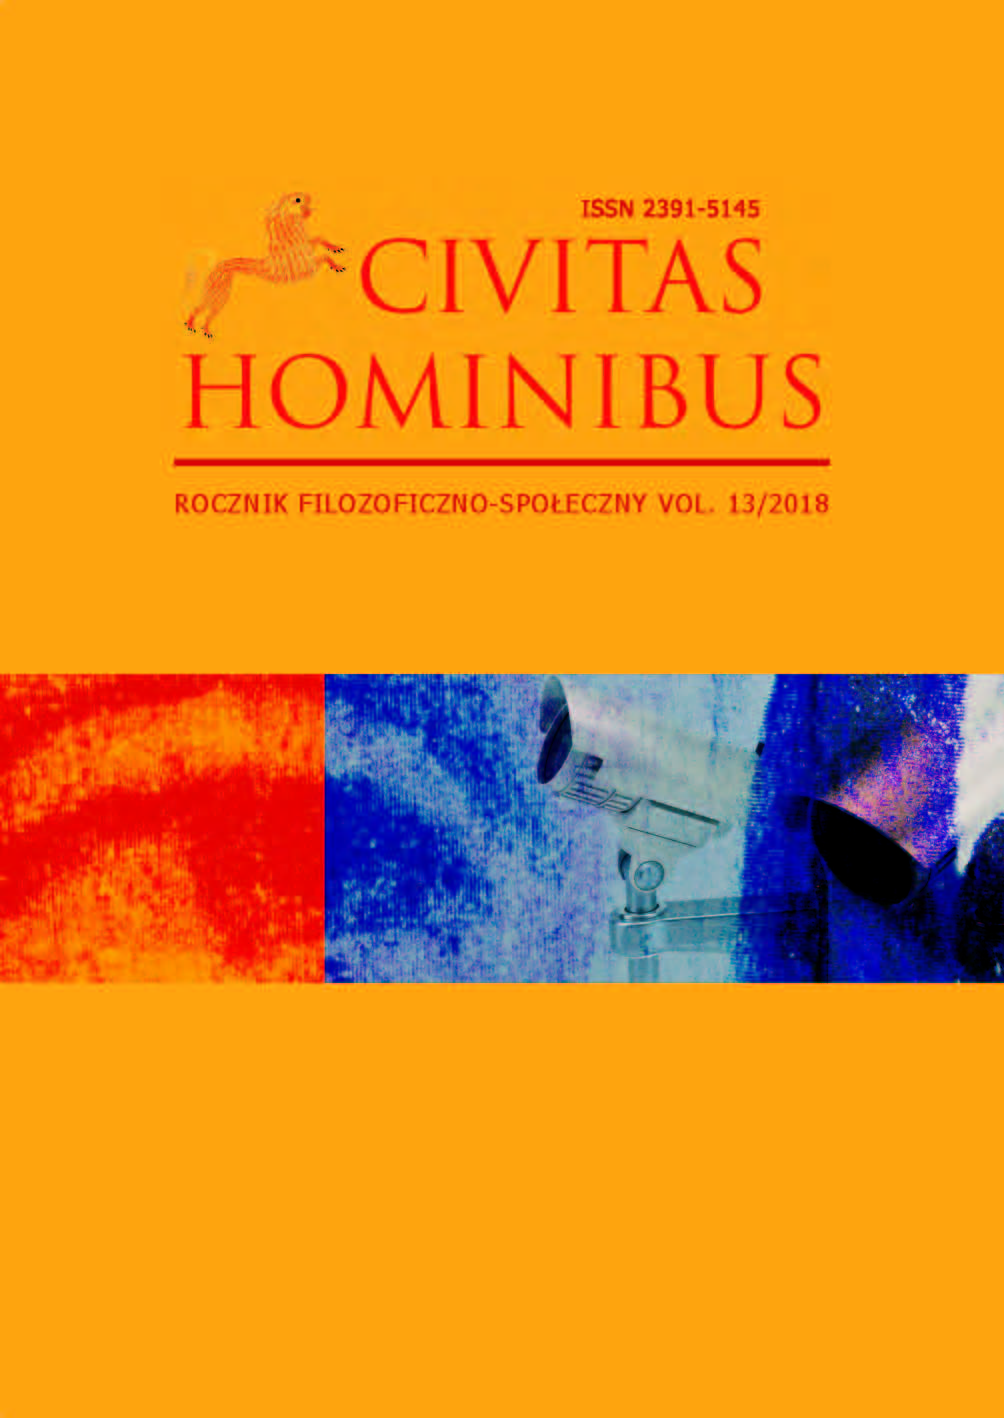 Civitas Hominibus XIII